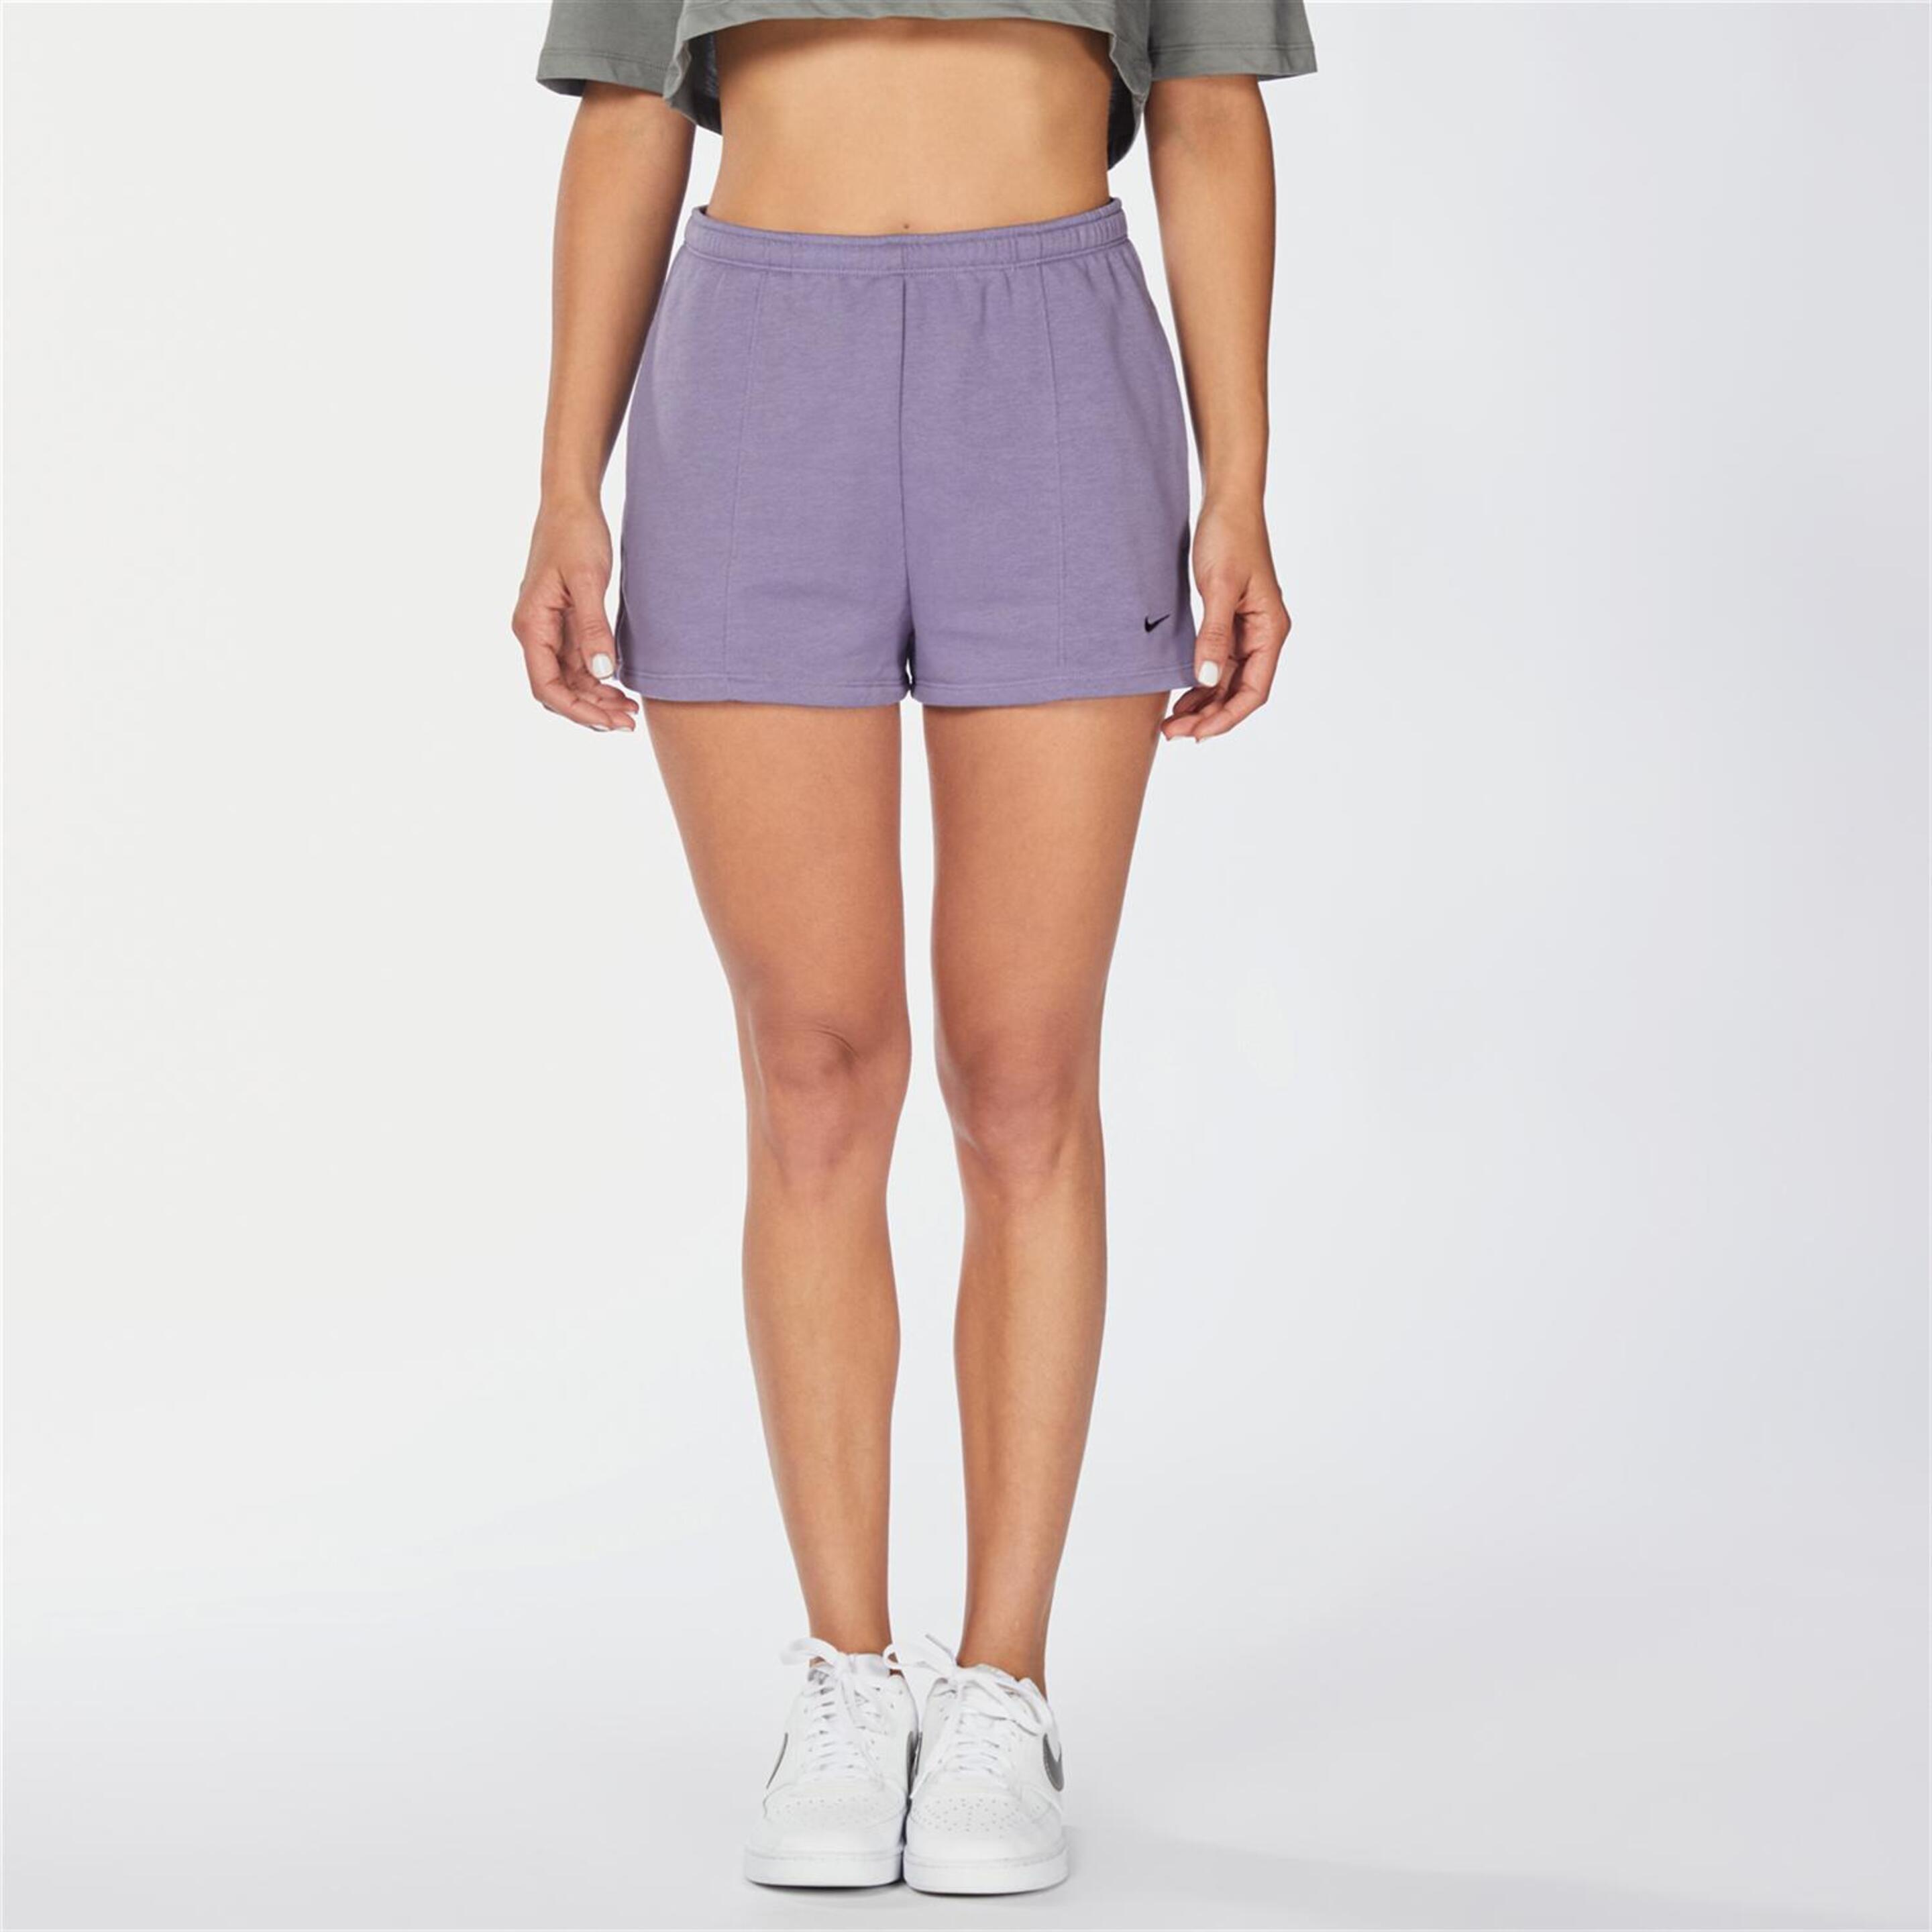 Pantalón Nike - Morado - Short Mujer